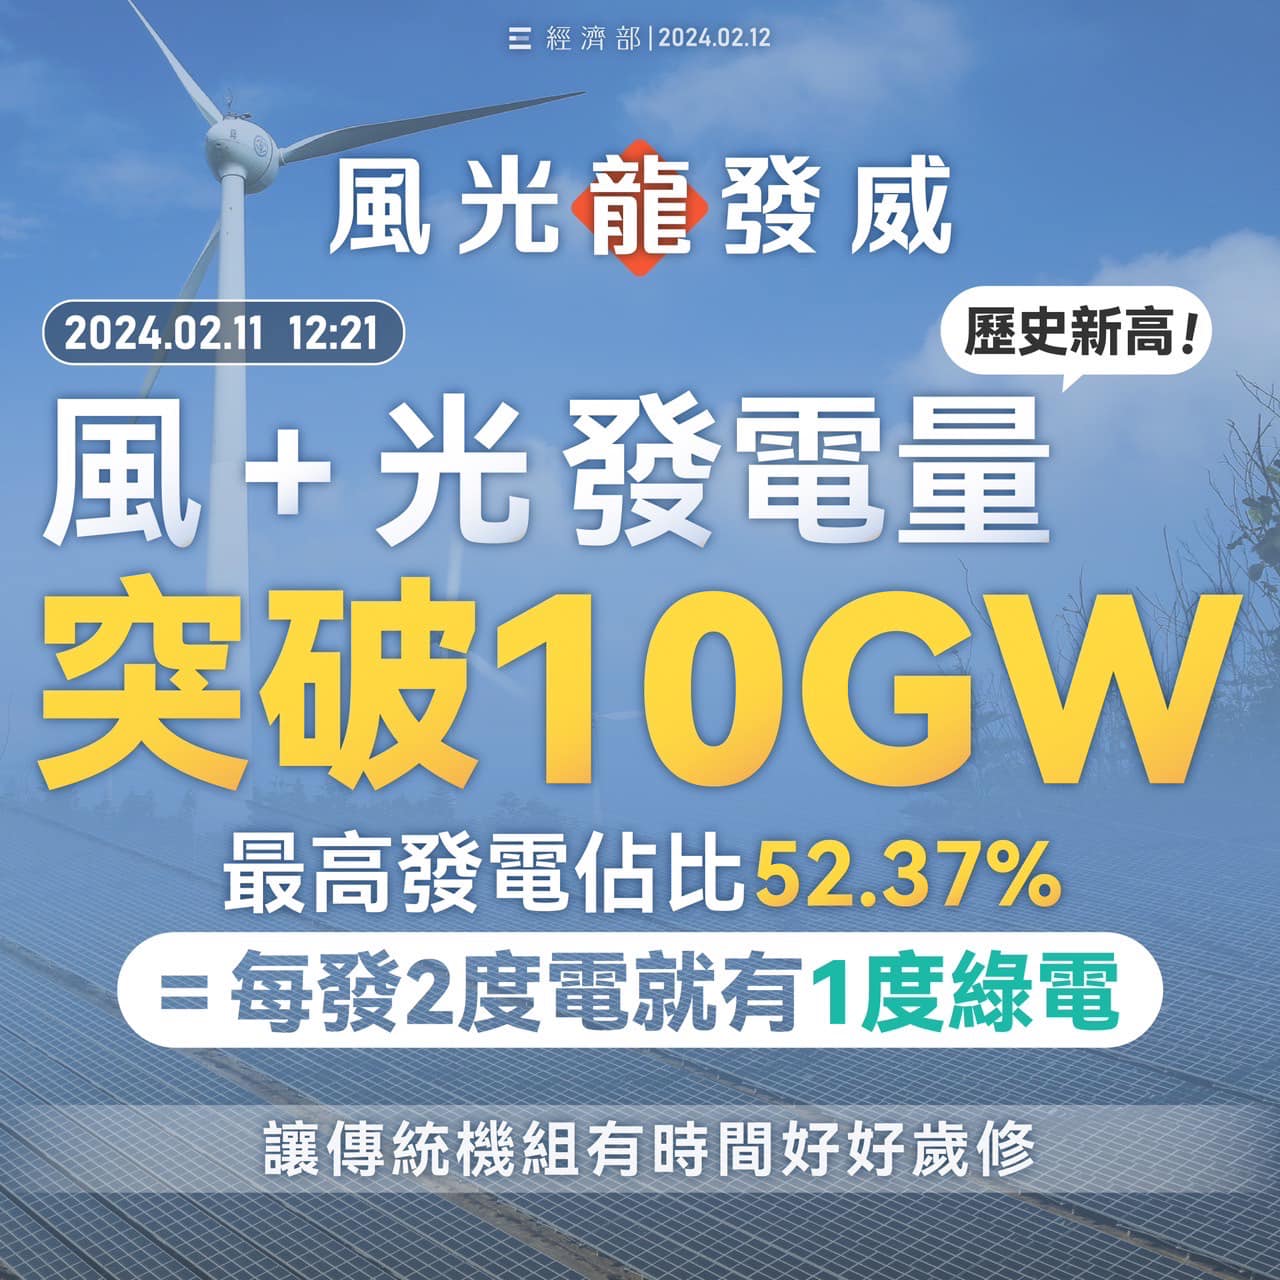 年初二風光最高發電量達10GW示意圖